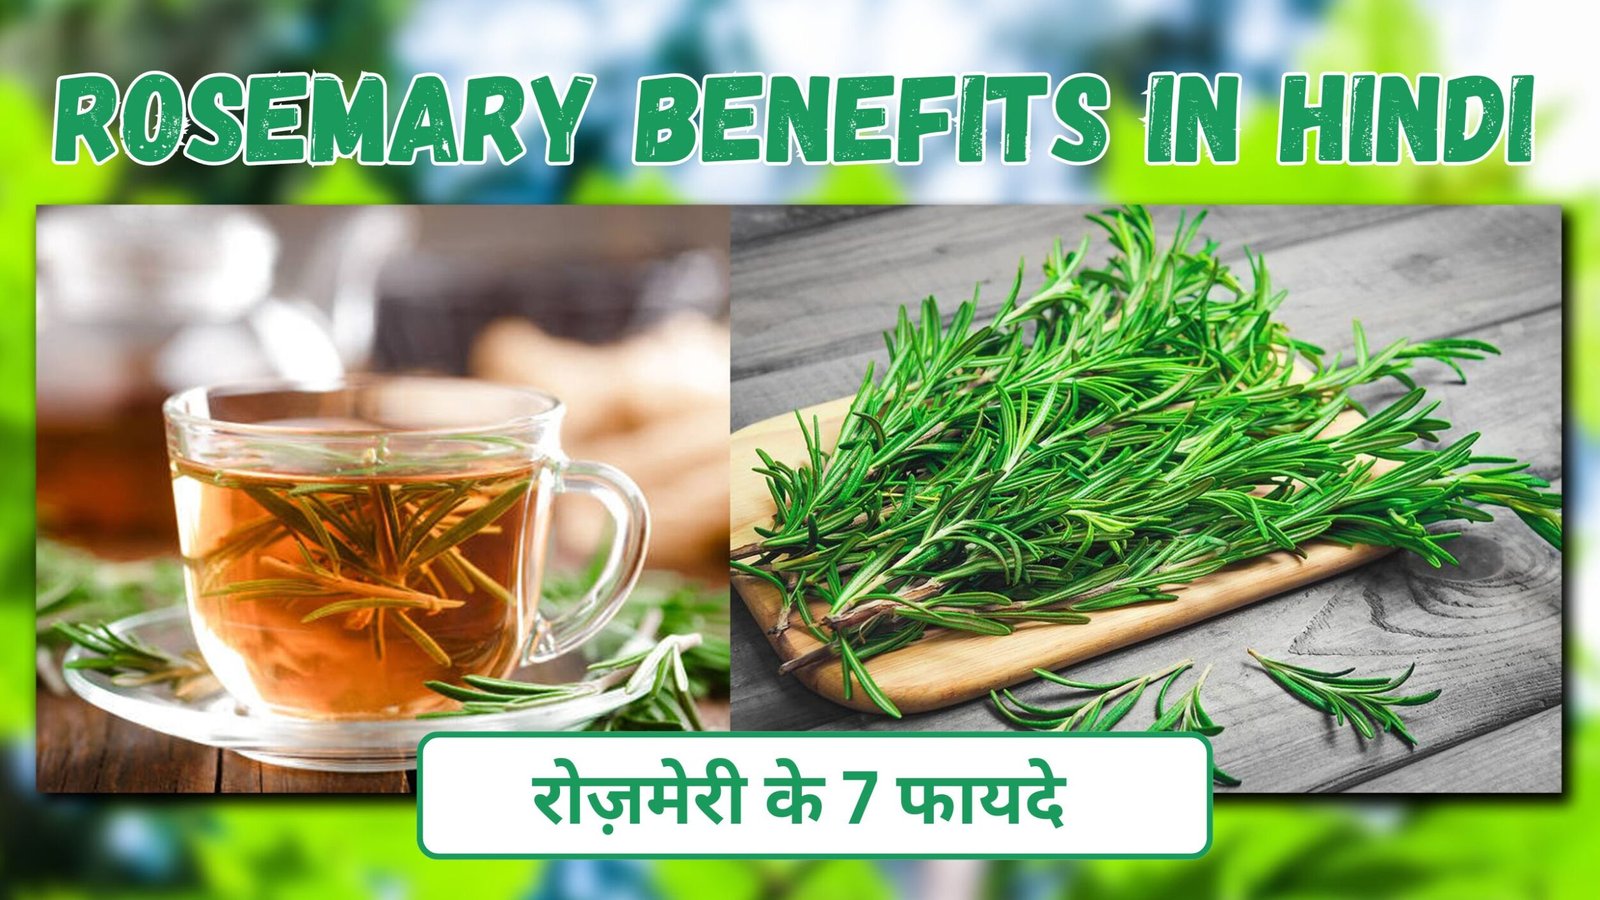 Rosemary benefits in hindi | रोज़मेरी के फ़ायदे | बालों को बनाये मजबूत और स्वस्थ